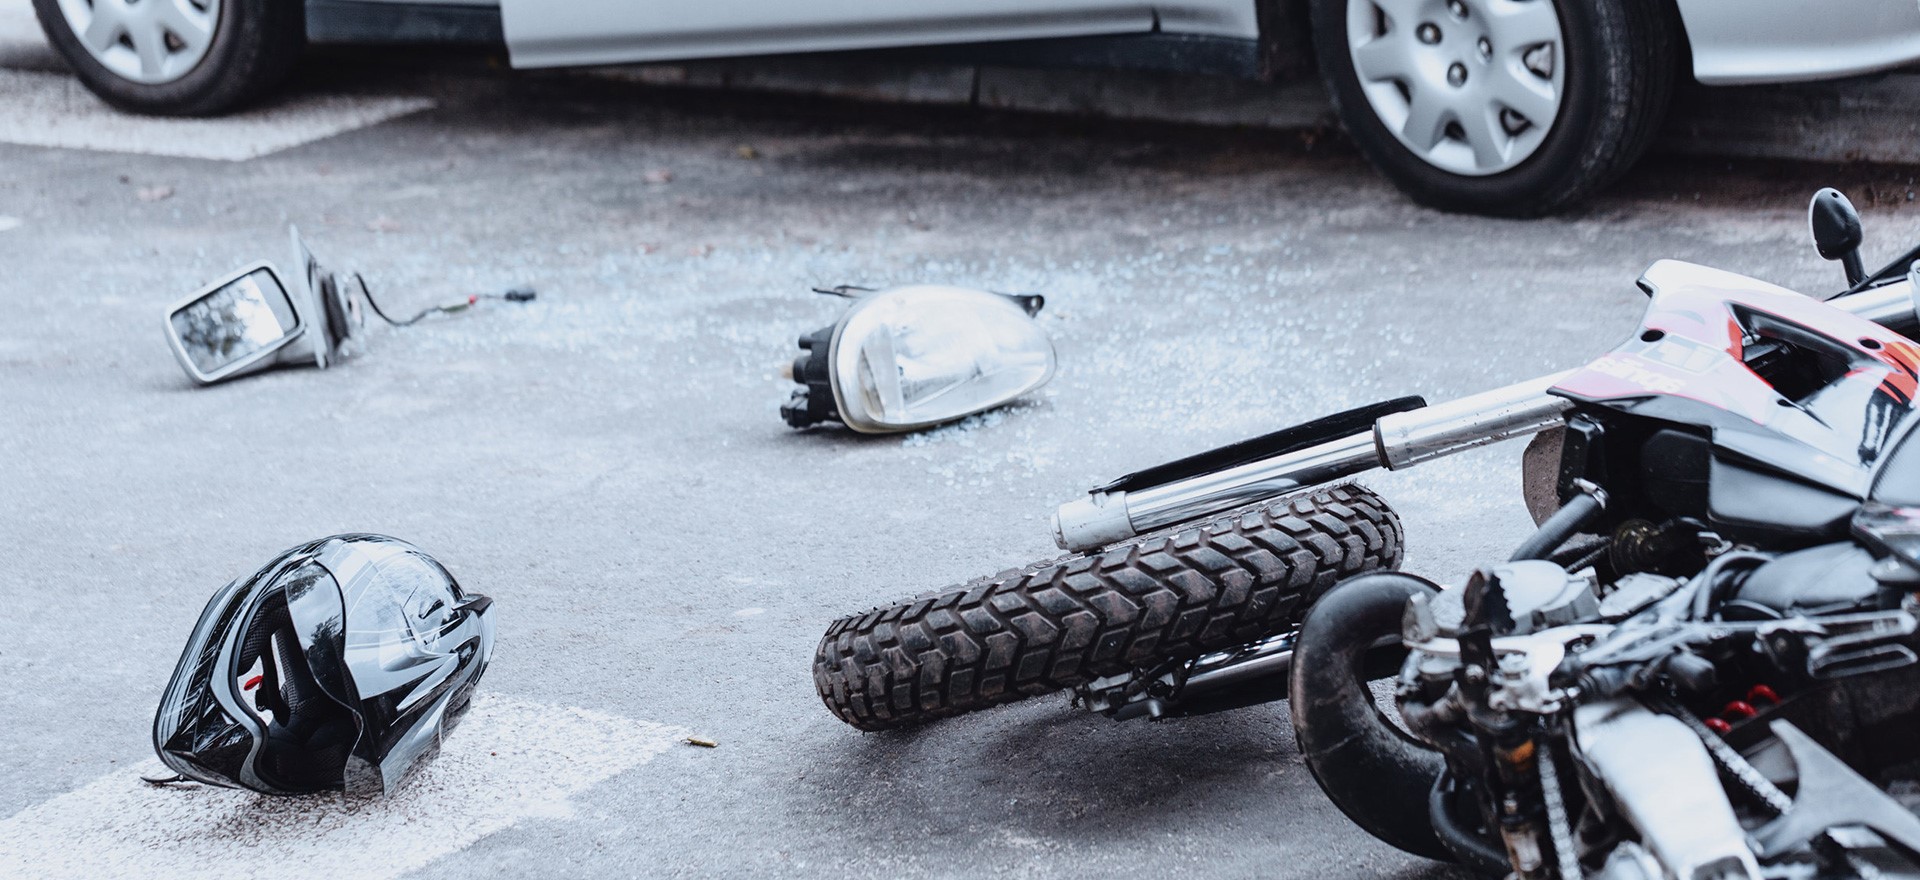 برای دریافت خسارت بیمه موتورسیکلت چه مدارکی لازم است؟